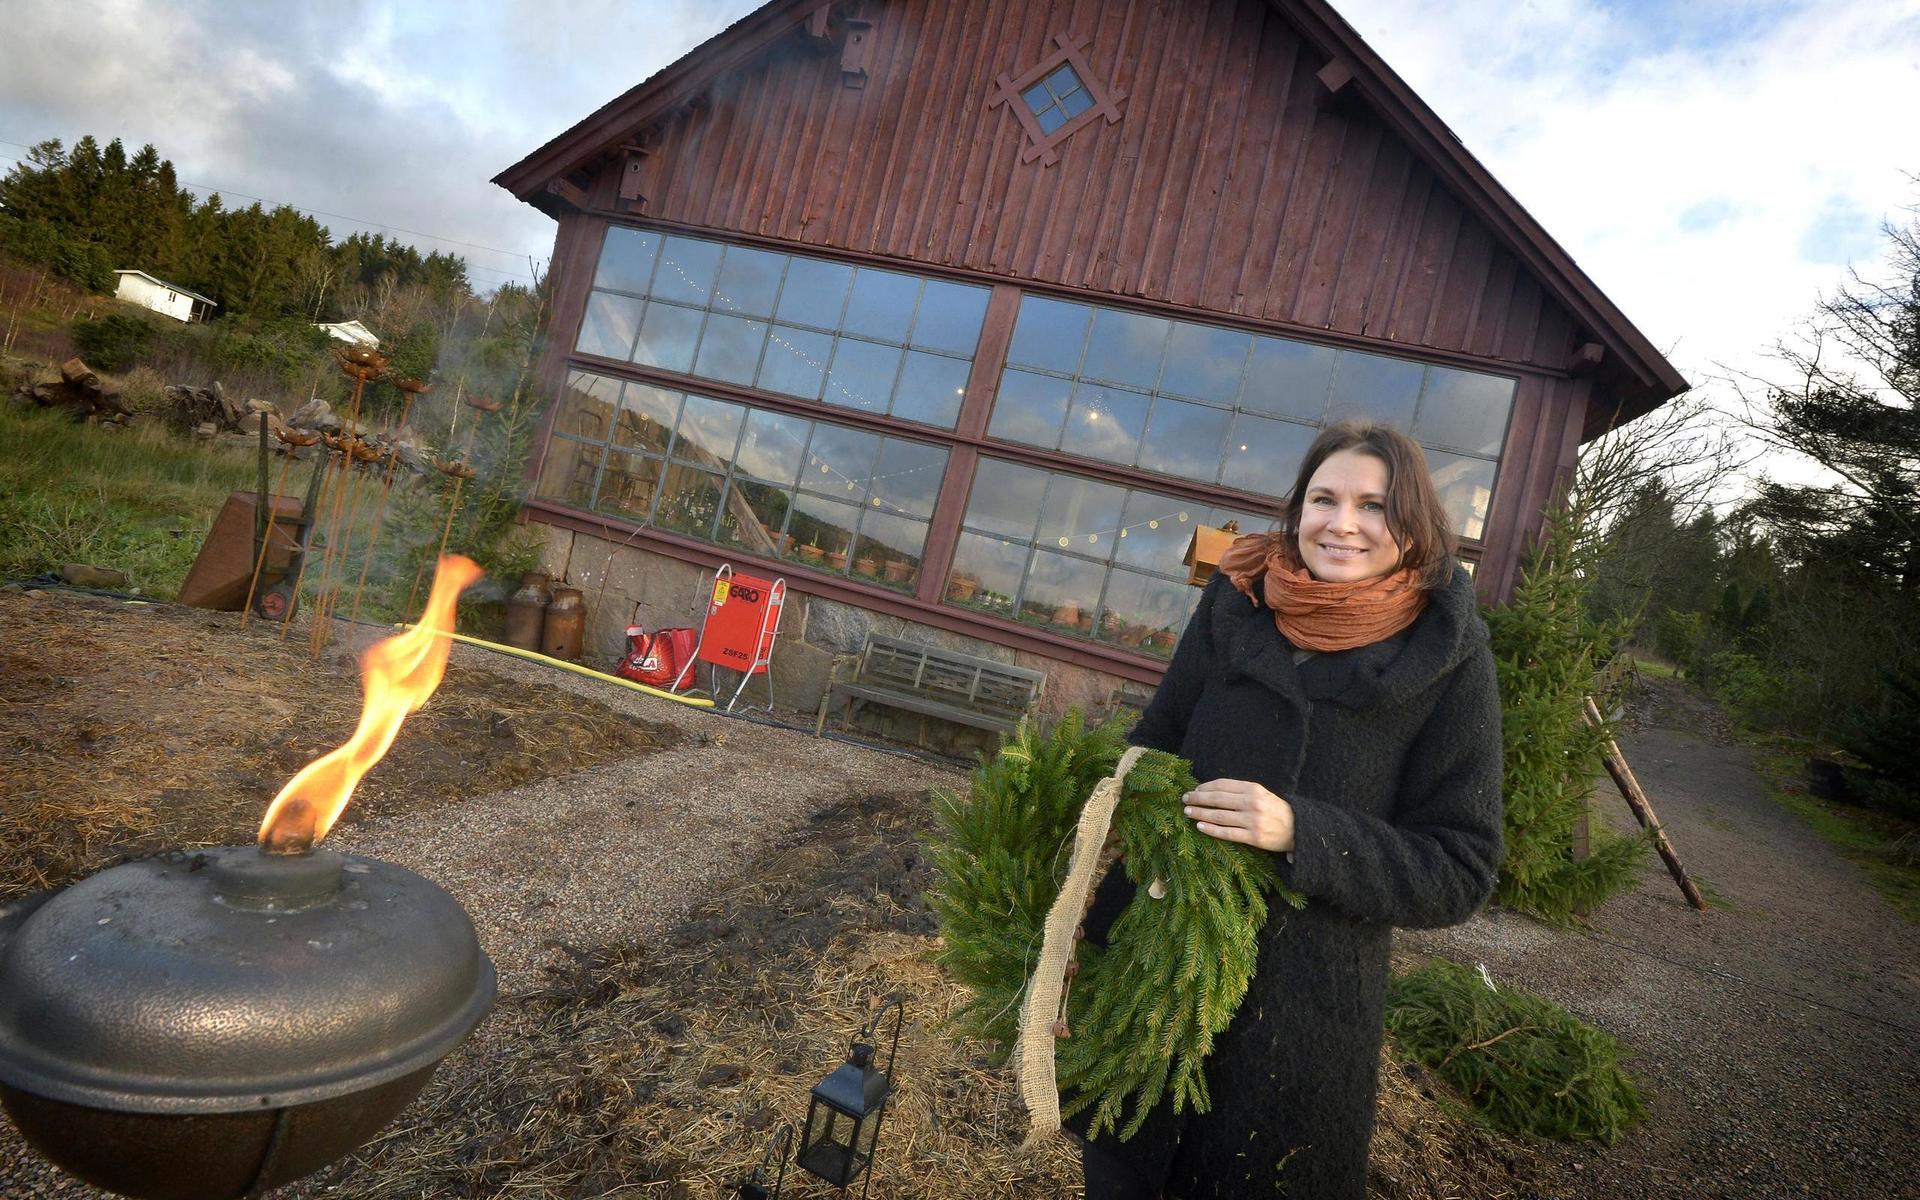 Marie Emilsson på Håkesgård ordnar julmarknad i ladan. Den klarade sig med ett nödrop undan branden och har fått fönster som tillverkats av en smed.